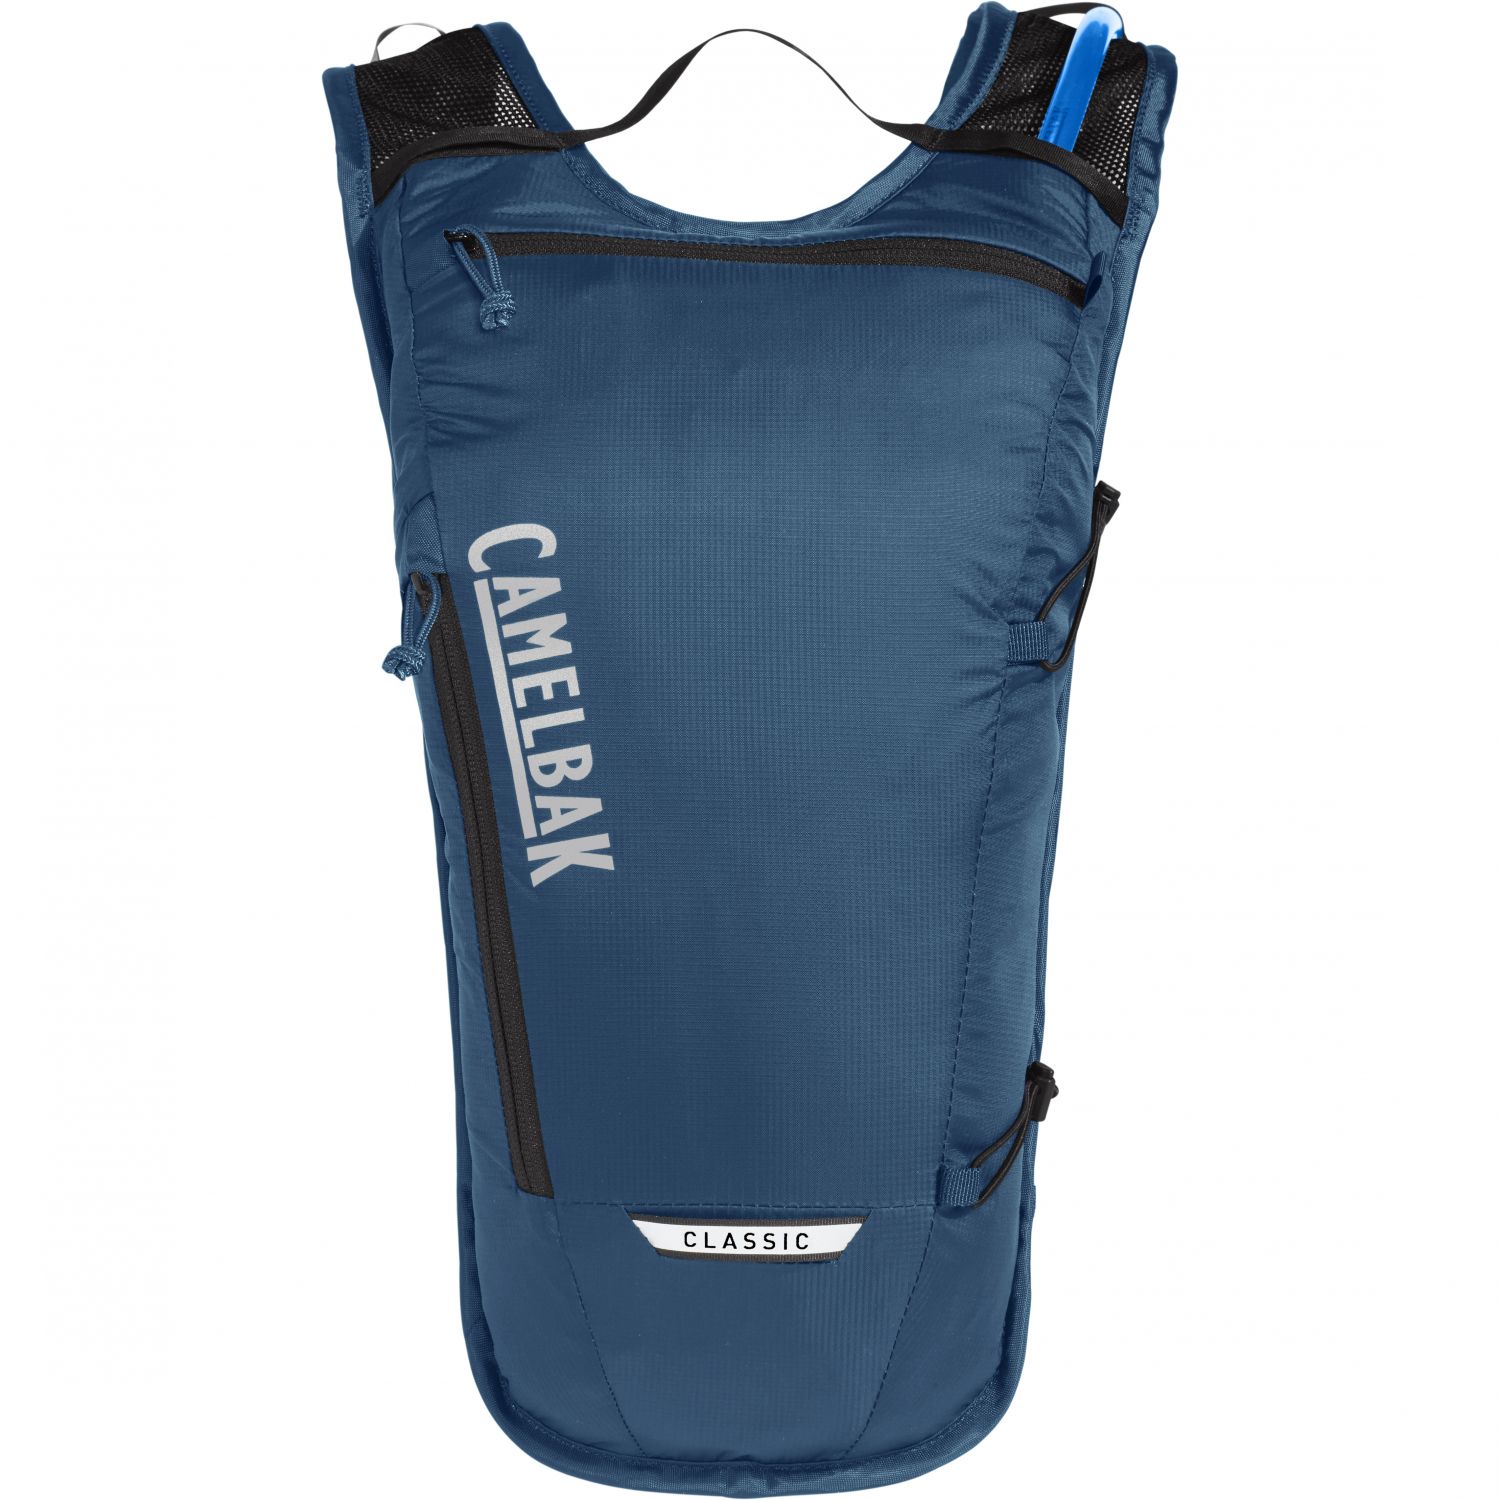 CamelBak Classic Light, hydration backpack, 2L, gibraltar navy/black